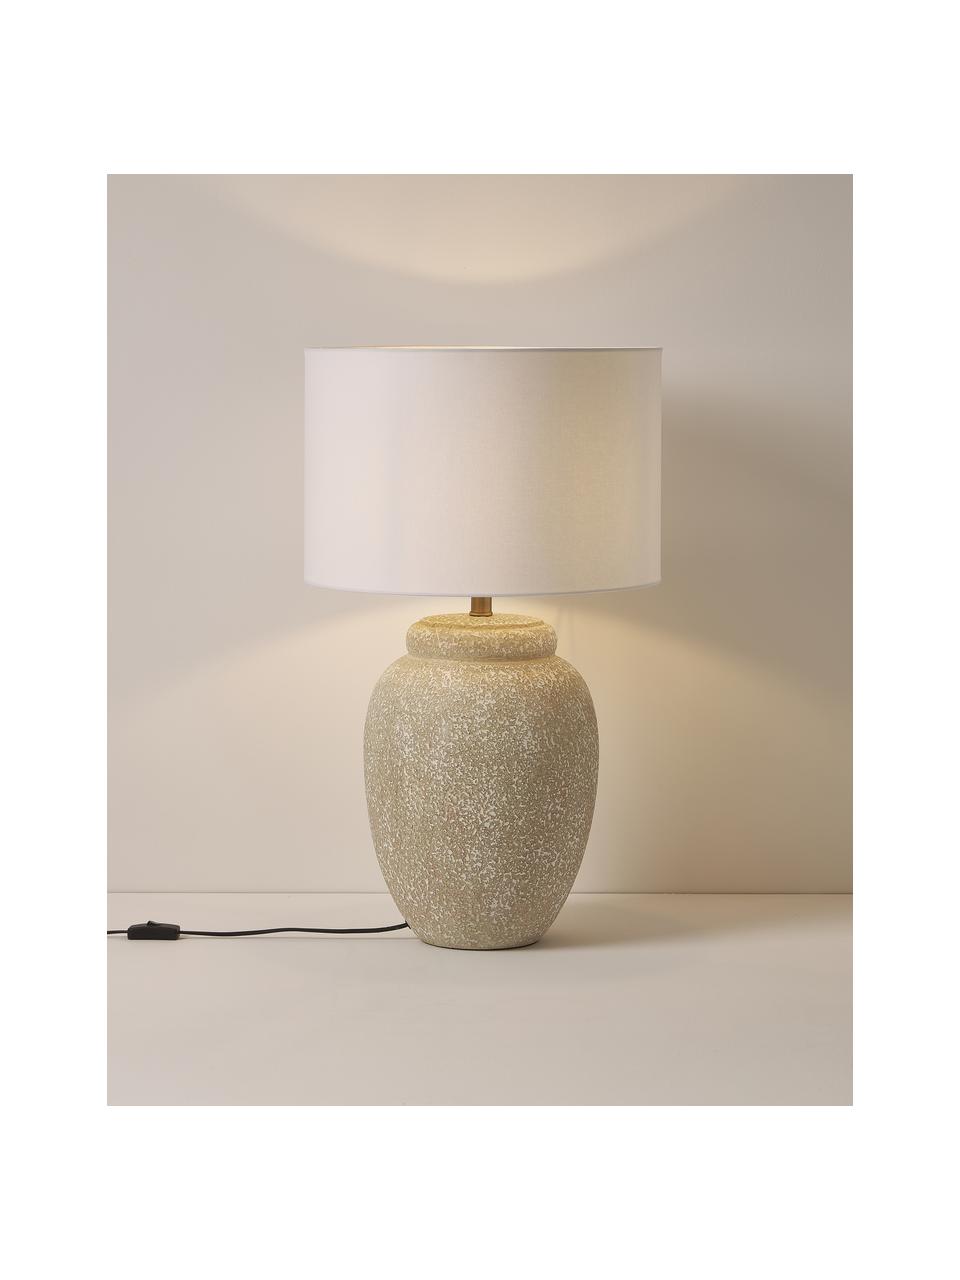 Große Tischlampe Bodhi mit Keramikfuß, Lampenschirm: Leinen, Lampenfuß: Keramik, Weiß, Grau, Ø 43 x H 71 cm